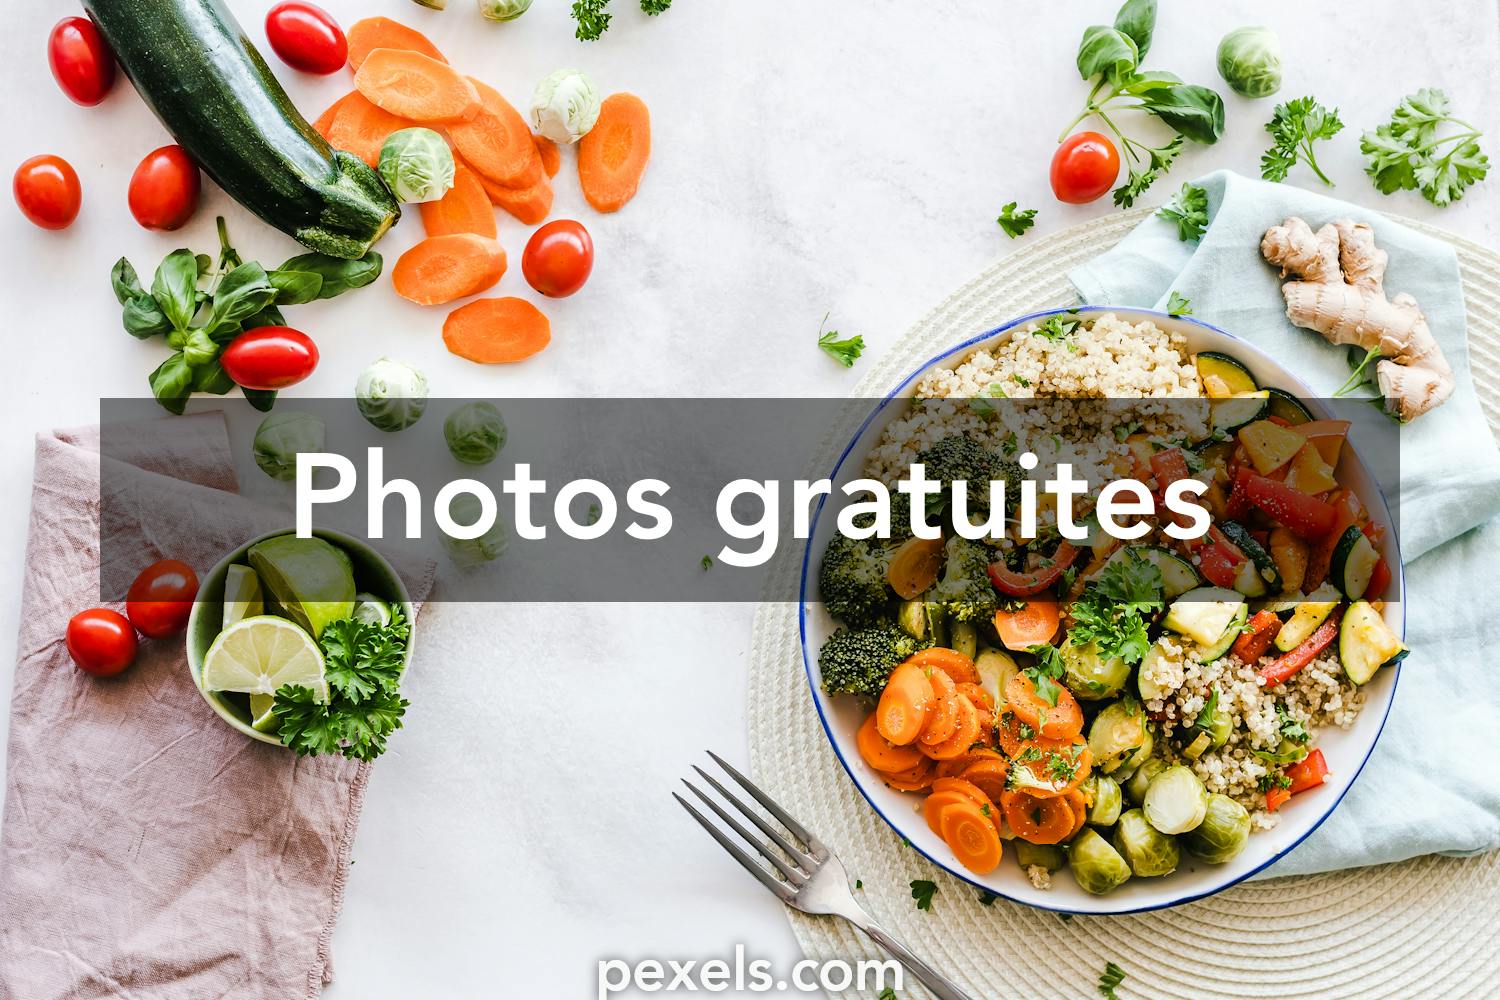 Photos Nourriture Americaine, 82 000+ photos de haute qualité gratuites